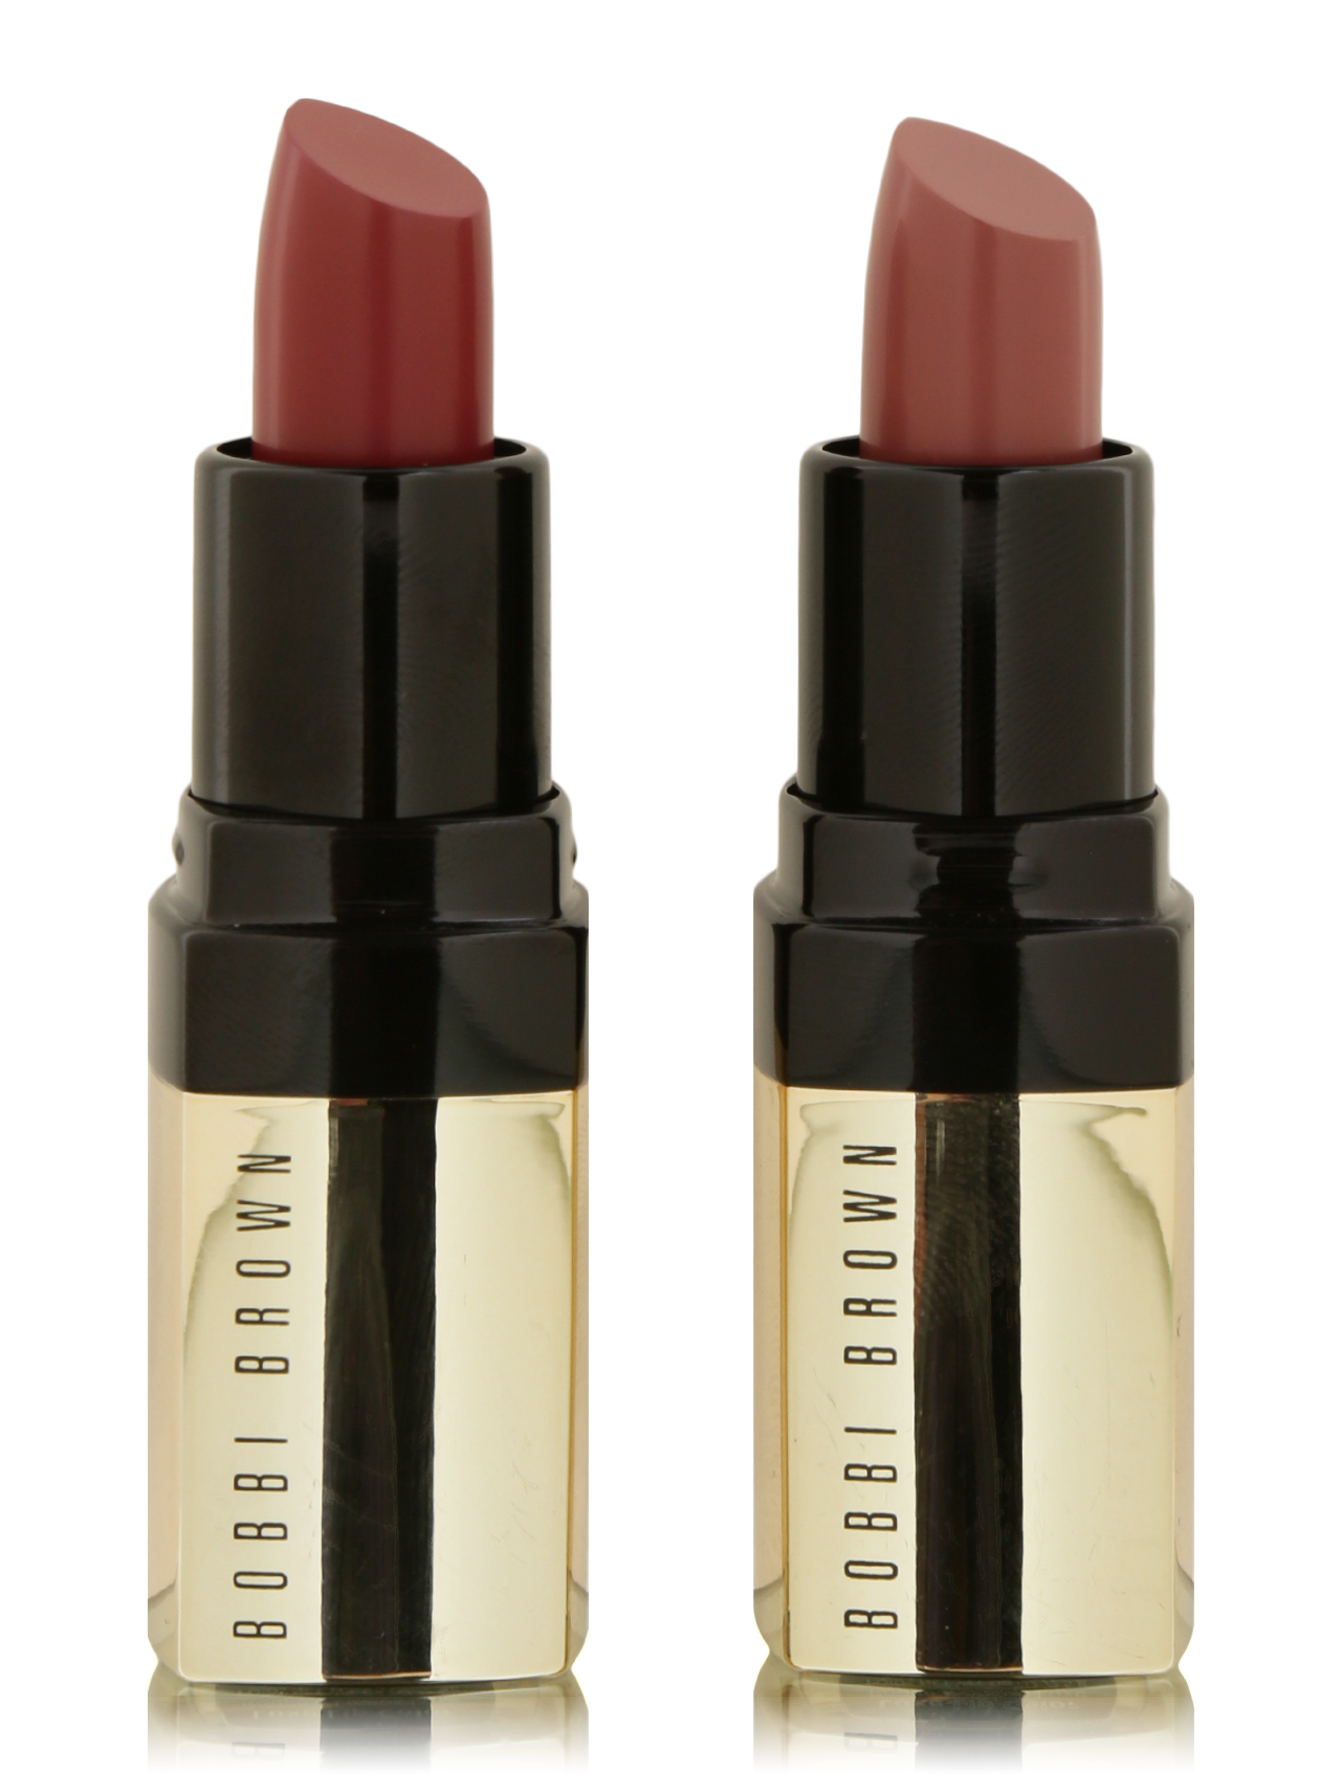 Дуо помад для губ Luxed Lip  Duo Berries Lipstick - Общий вид